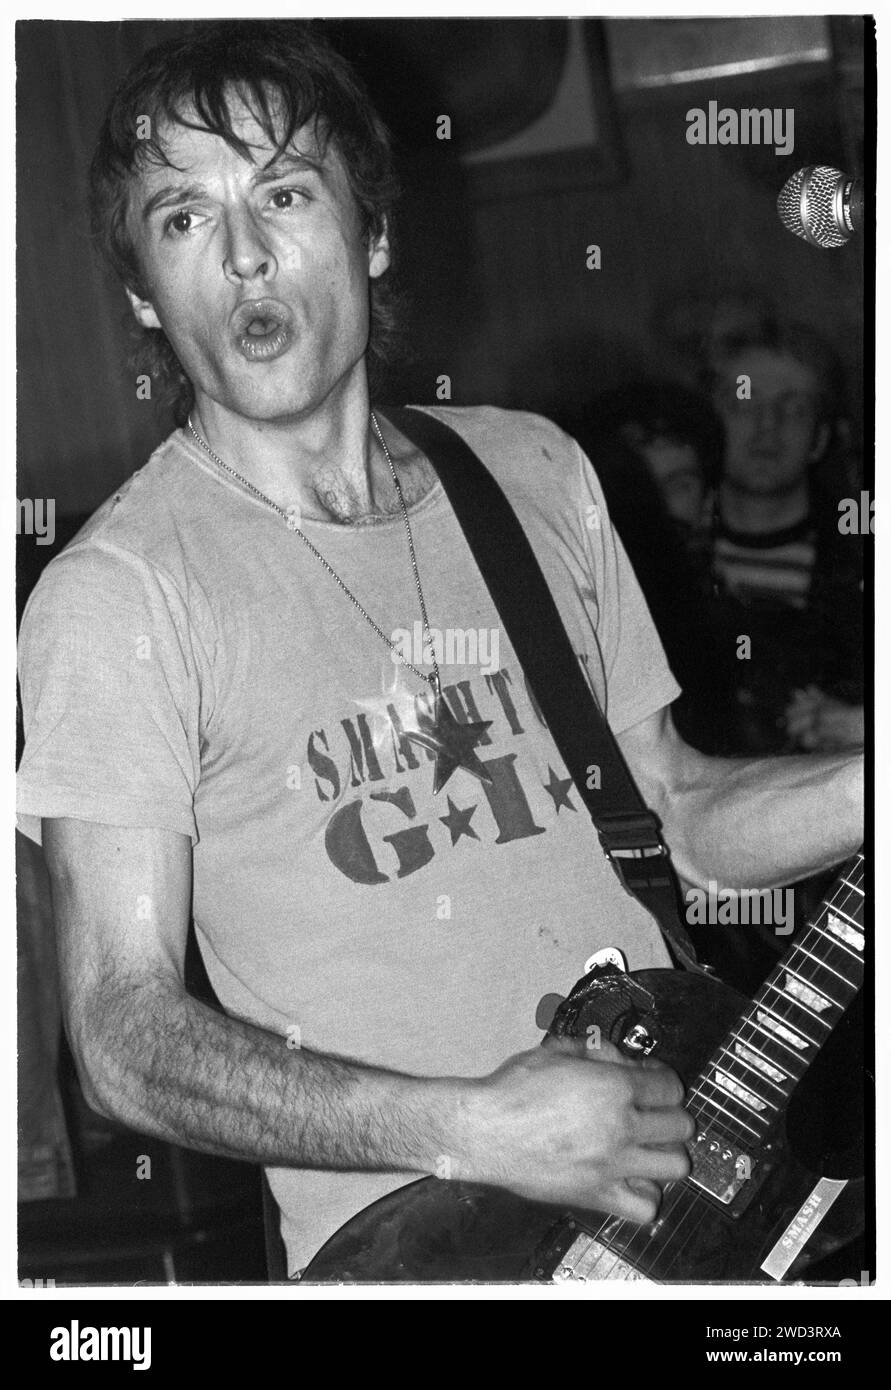 Ed Borrie von der Punkband S*M*A*S*H (SMASH) spielte am 21. März 1994 live in den legendären TJ’s in Newport, Wales, Großbritannien. Foto: Rob Watkins. INFO: SMASH, eine britische Punkband aus den 90ern, hat sich dem DIY-Ethos angeschlossen. Ihr energiegeladener Sound, angetrieben von politisch aufgeladenen Texten, fand eine Anhängerschaft. Hymnen wie „I Want to Kill Someone“ und „Shame“ fesselten den rebellischen Geist der Punkszene während ihrer aktiven Jahre. Stockfoto